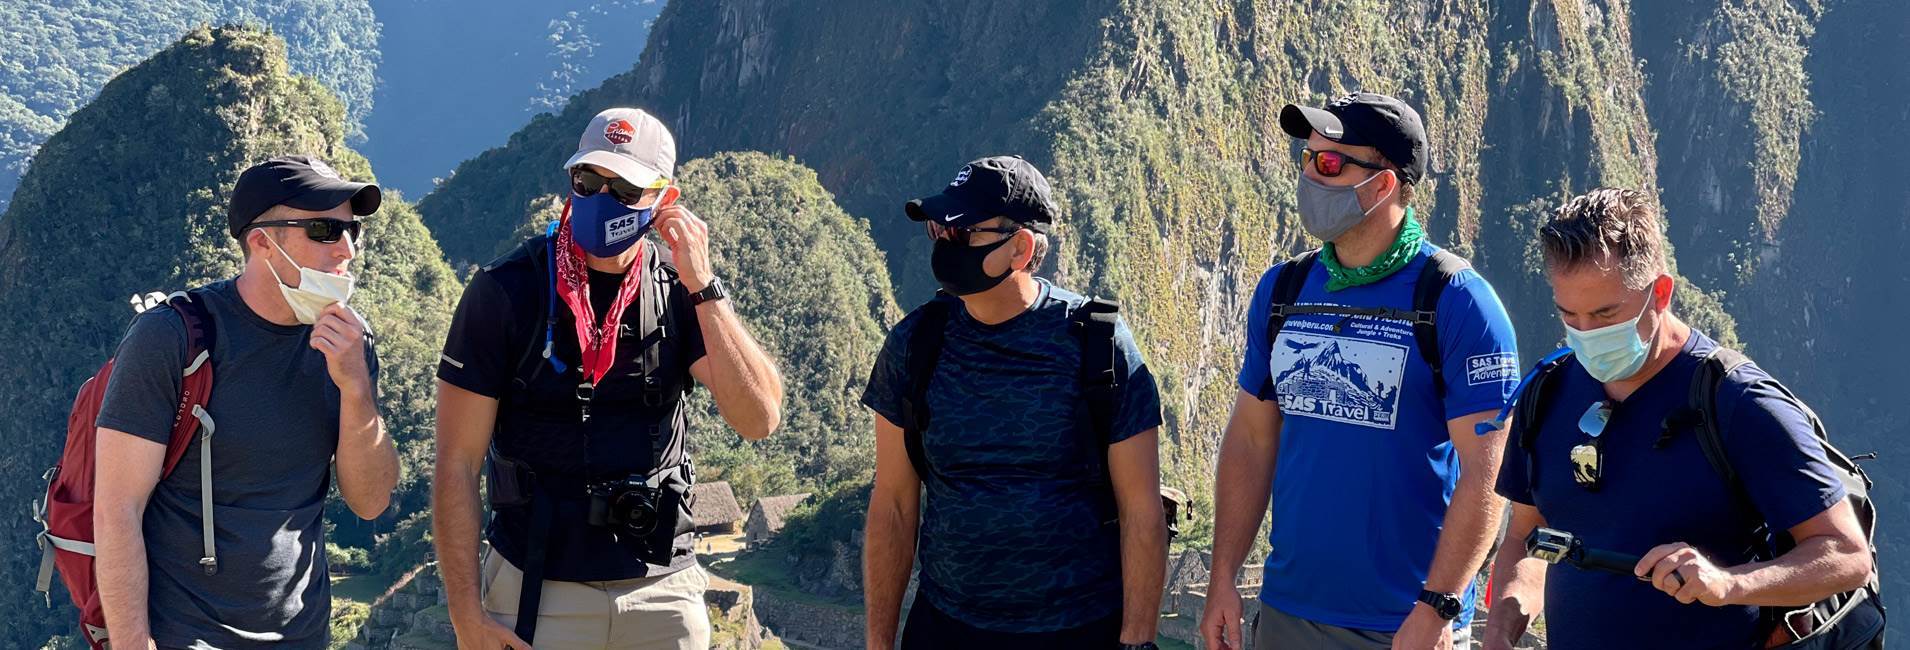 Inca Trail trek 5 days with Inkaterra hotel in Machupicchu - SAS Travel Peru